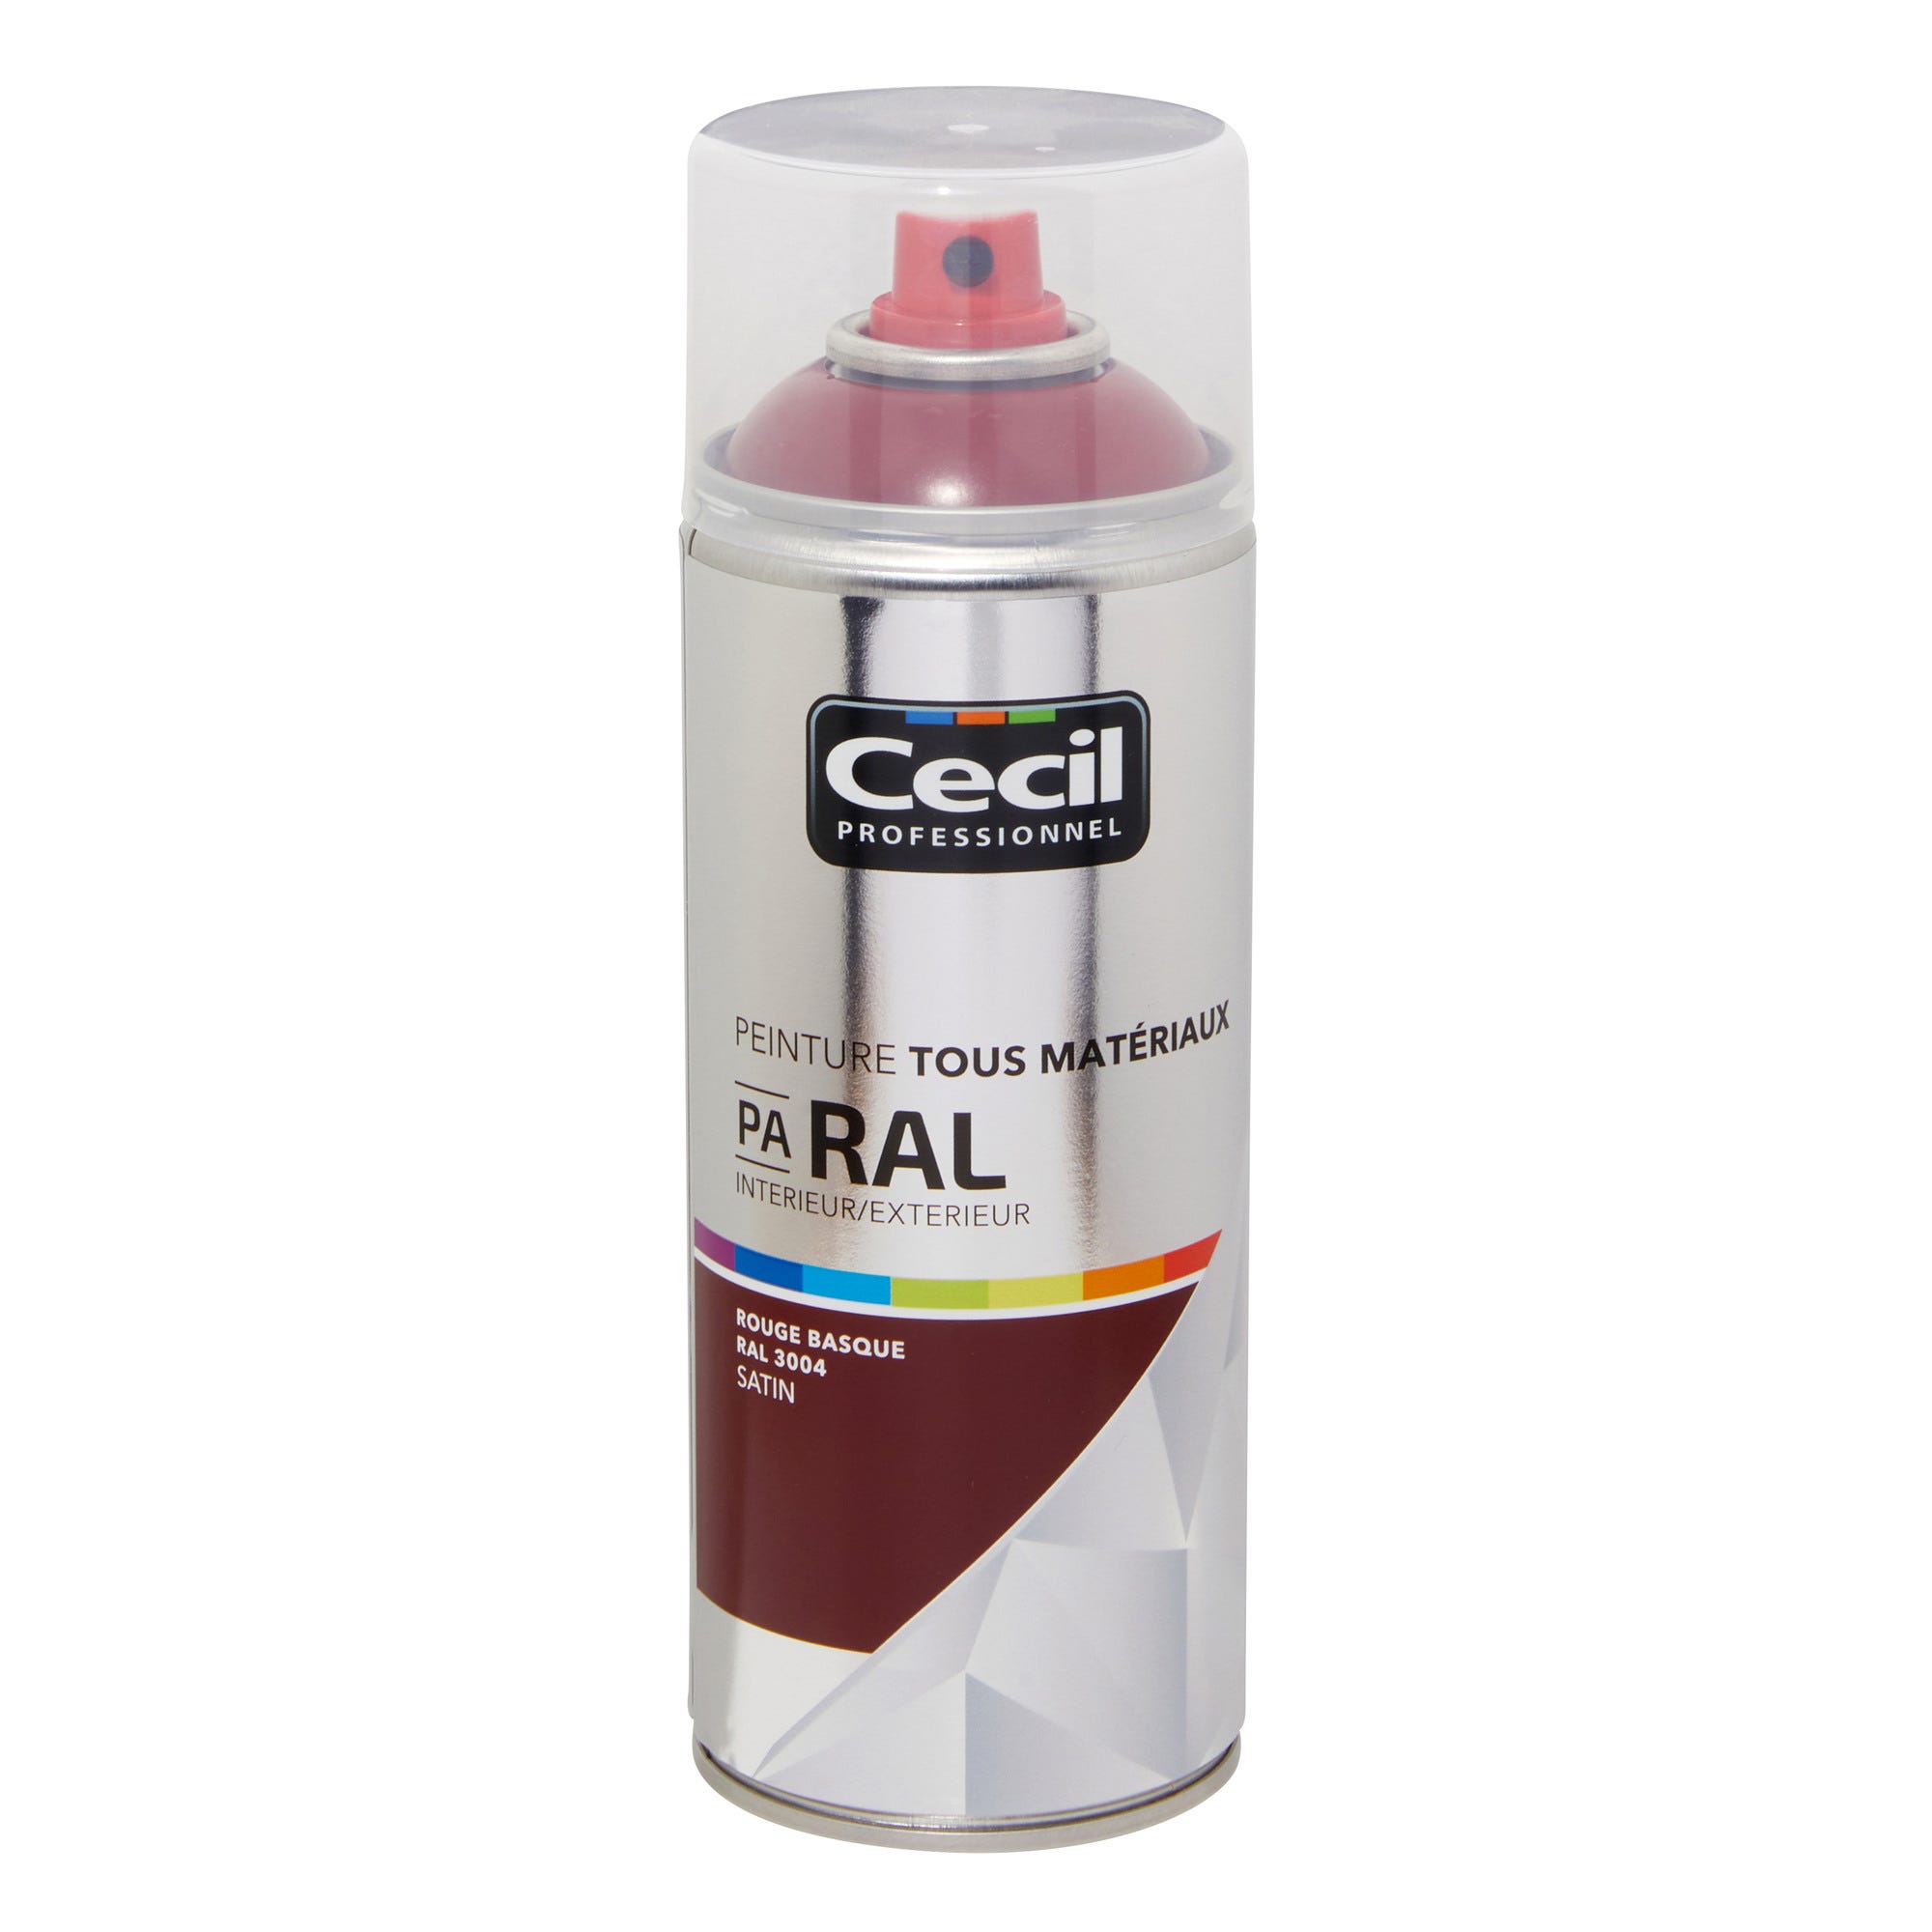 Peinture aérosol tous matériaux int/ext satin rouge basque RAL3004 400 ml - CECIL PRO 0